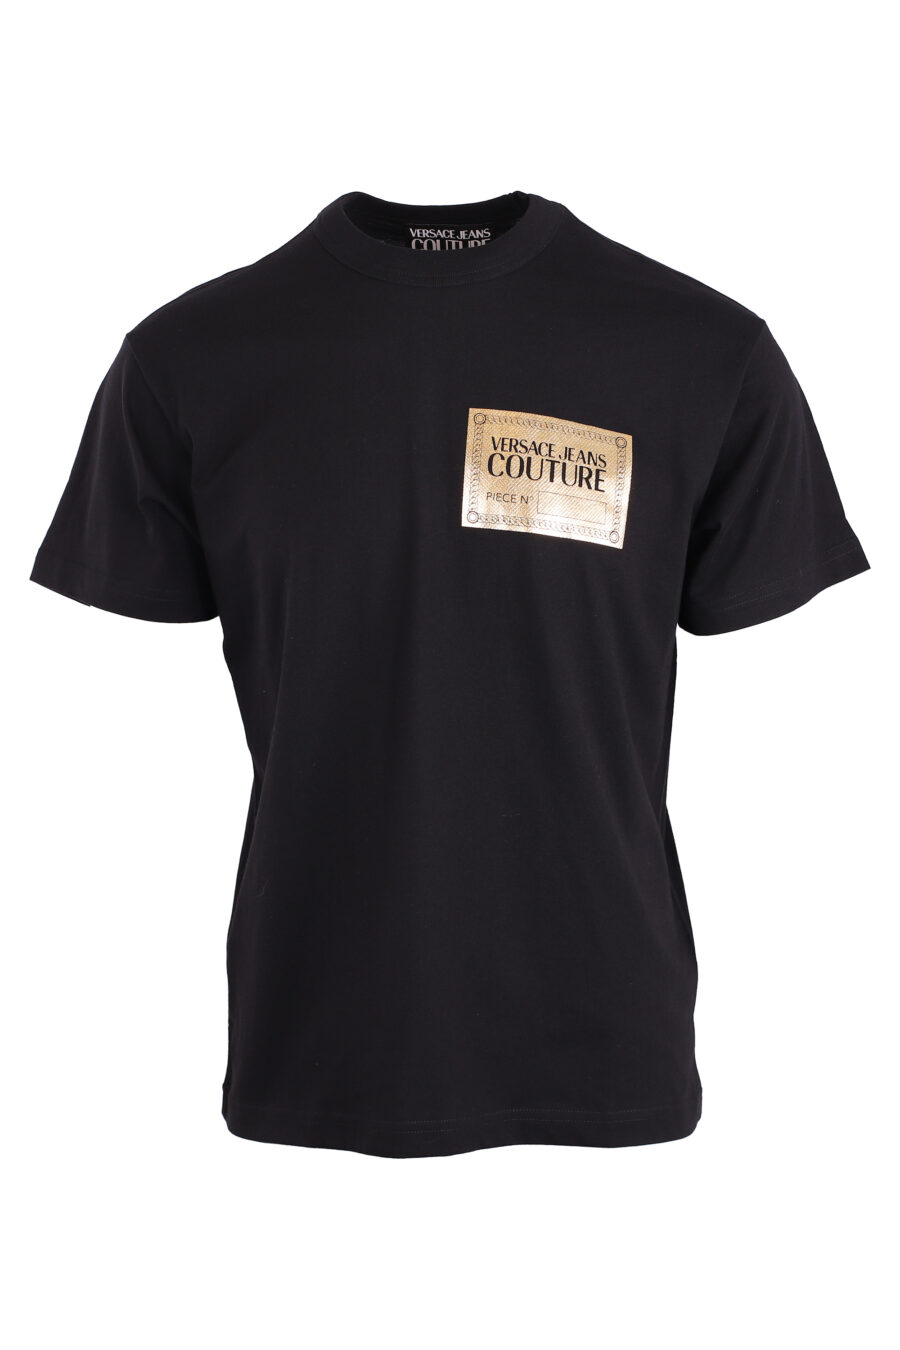 T-shirt preta com logótipo em chapa dourada - IMG 8947